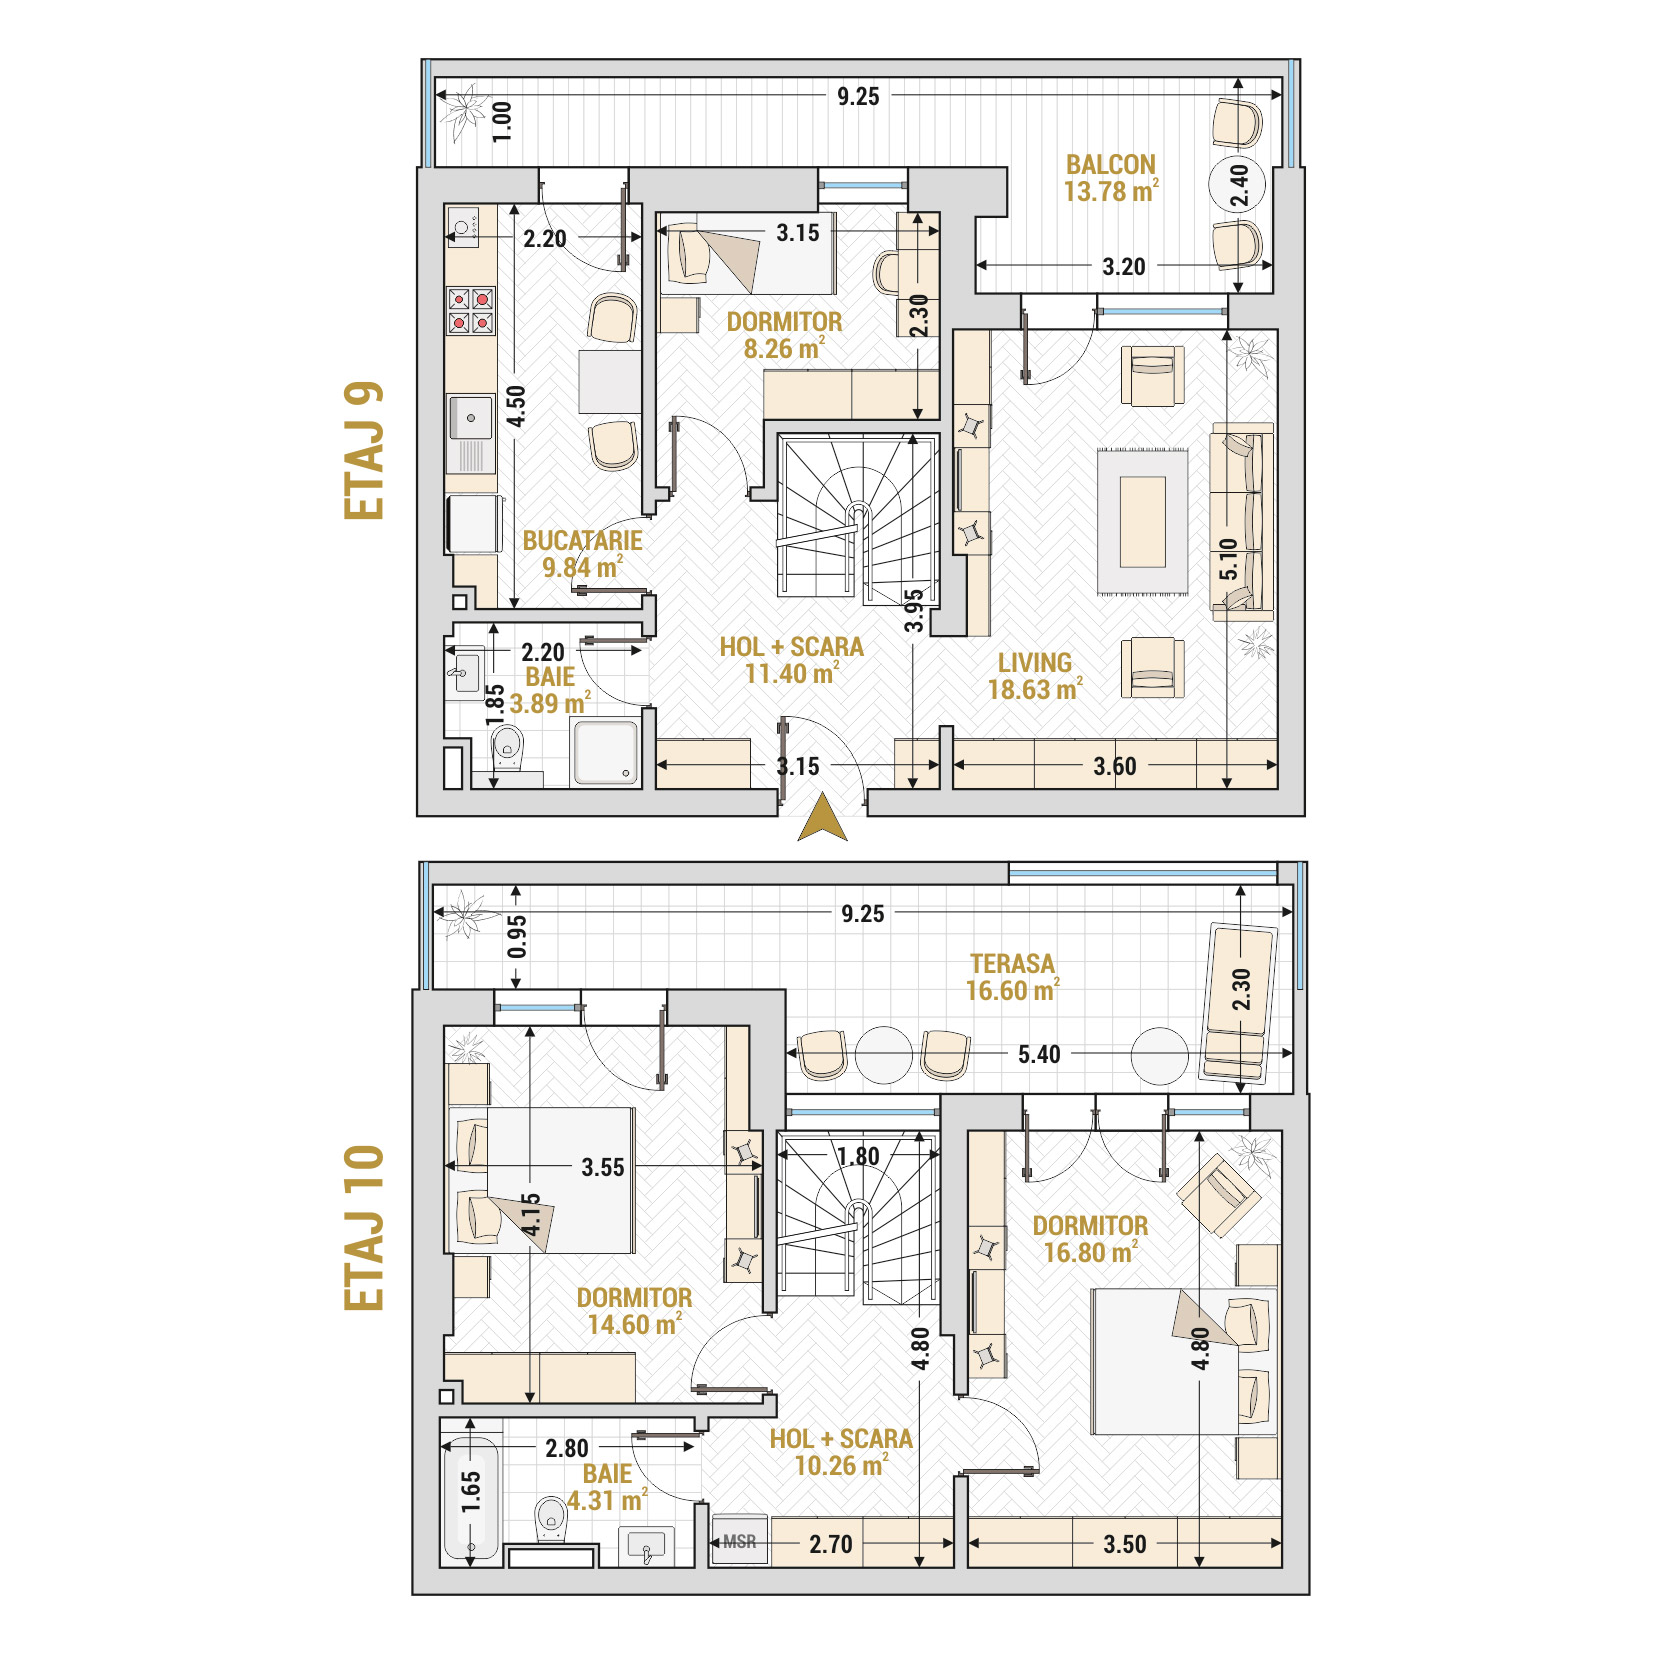 Penthouse 4 Camere Tip 4 Corp 9 - Drumul Taberei Residence - Apartamente de vanzare Bucuresti - Suprafata utila totala - 128.37 mp